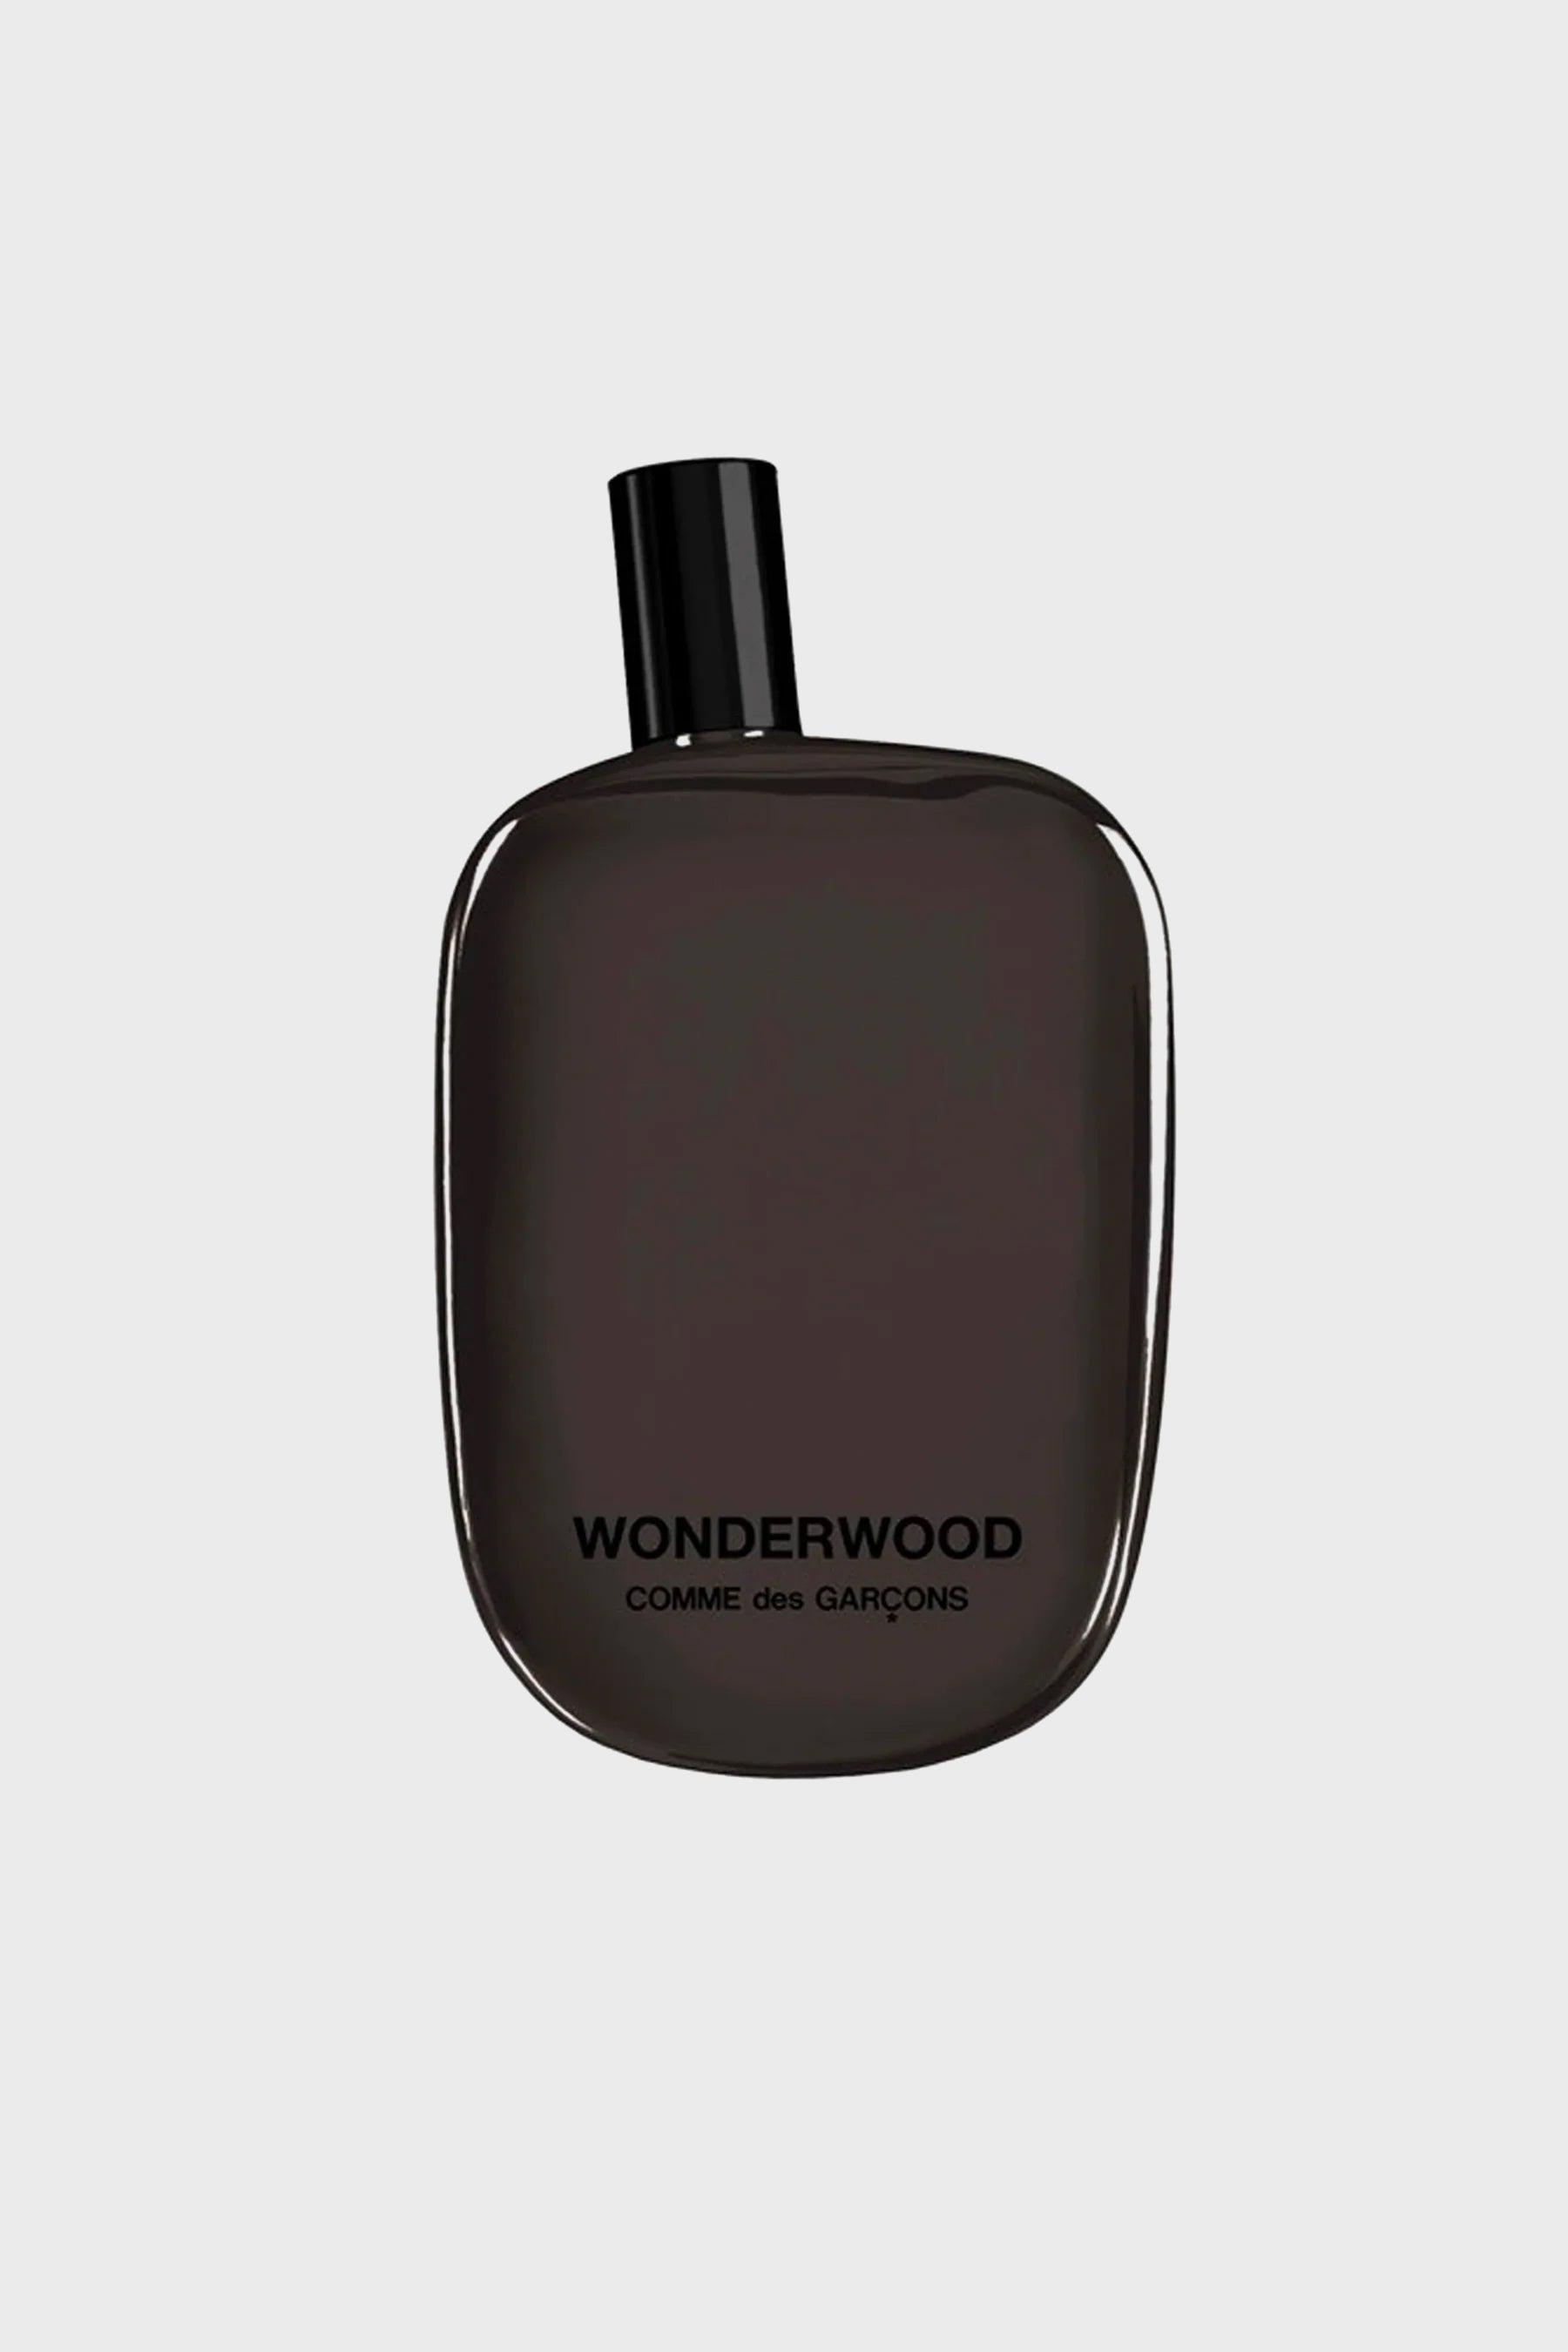 Comme des Gacrons PARFUMS Wonderwood Eau de Parfum 100mL – NOMAD